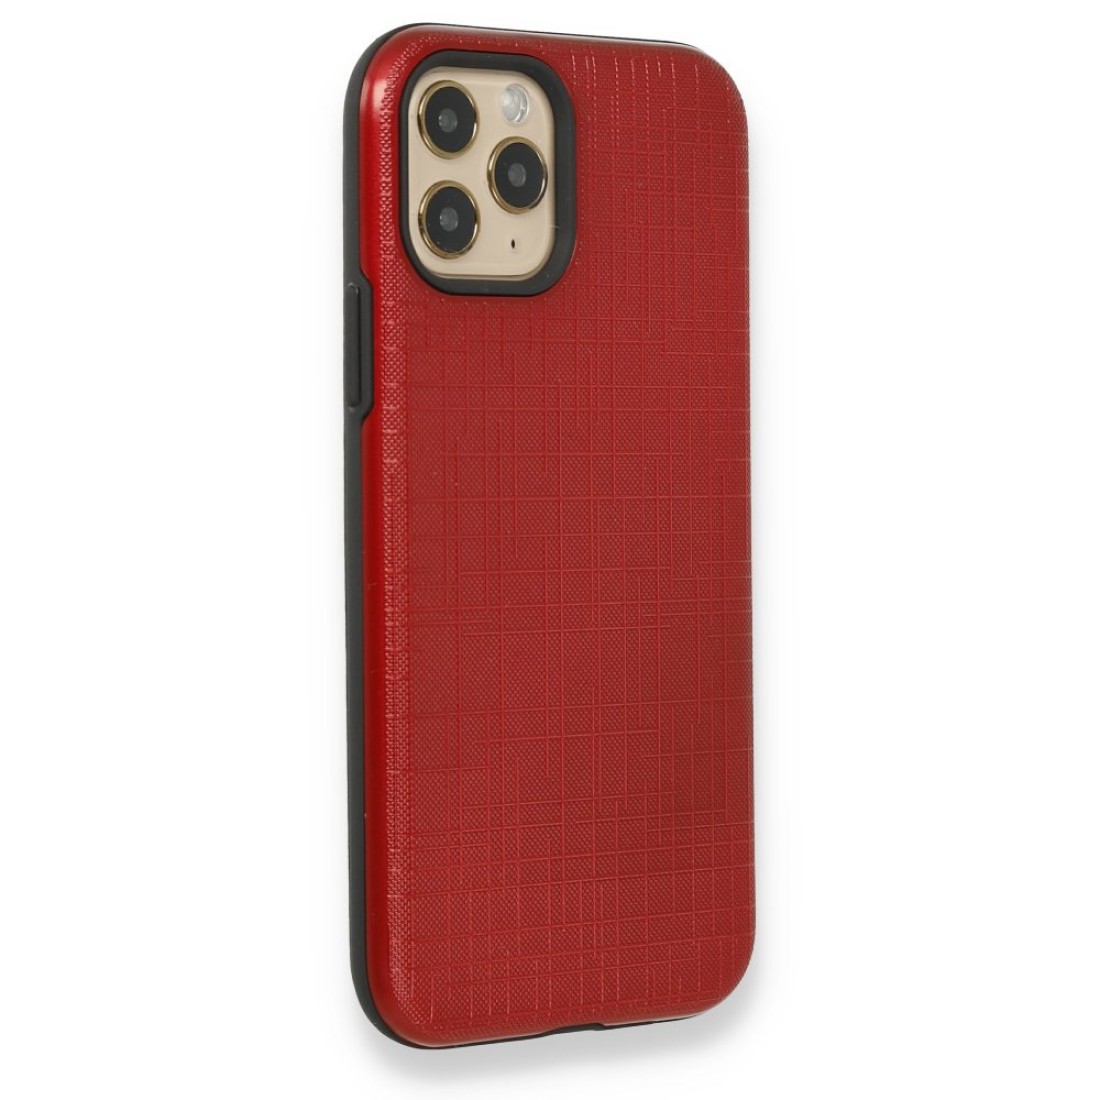 Apple iPhone 11 Pro Max Kılıf YouYou Silikon Kapak - Kırmızı